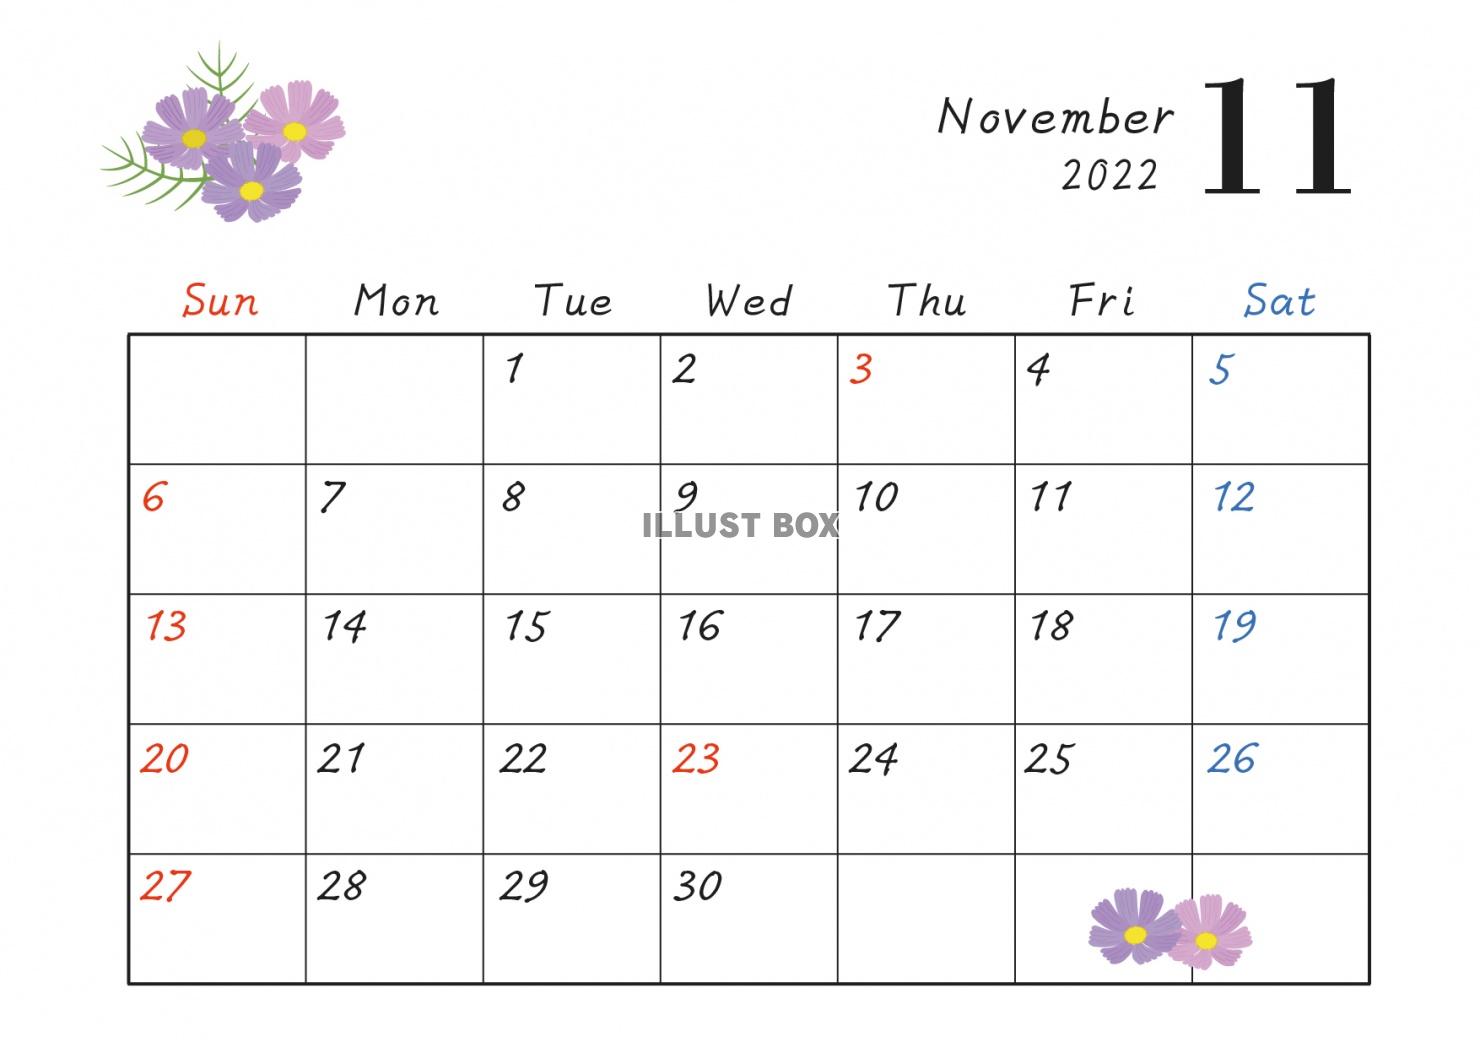 2022年11月のカレンダー